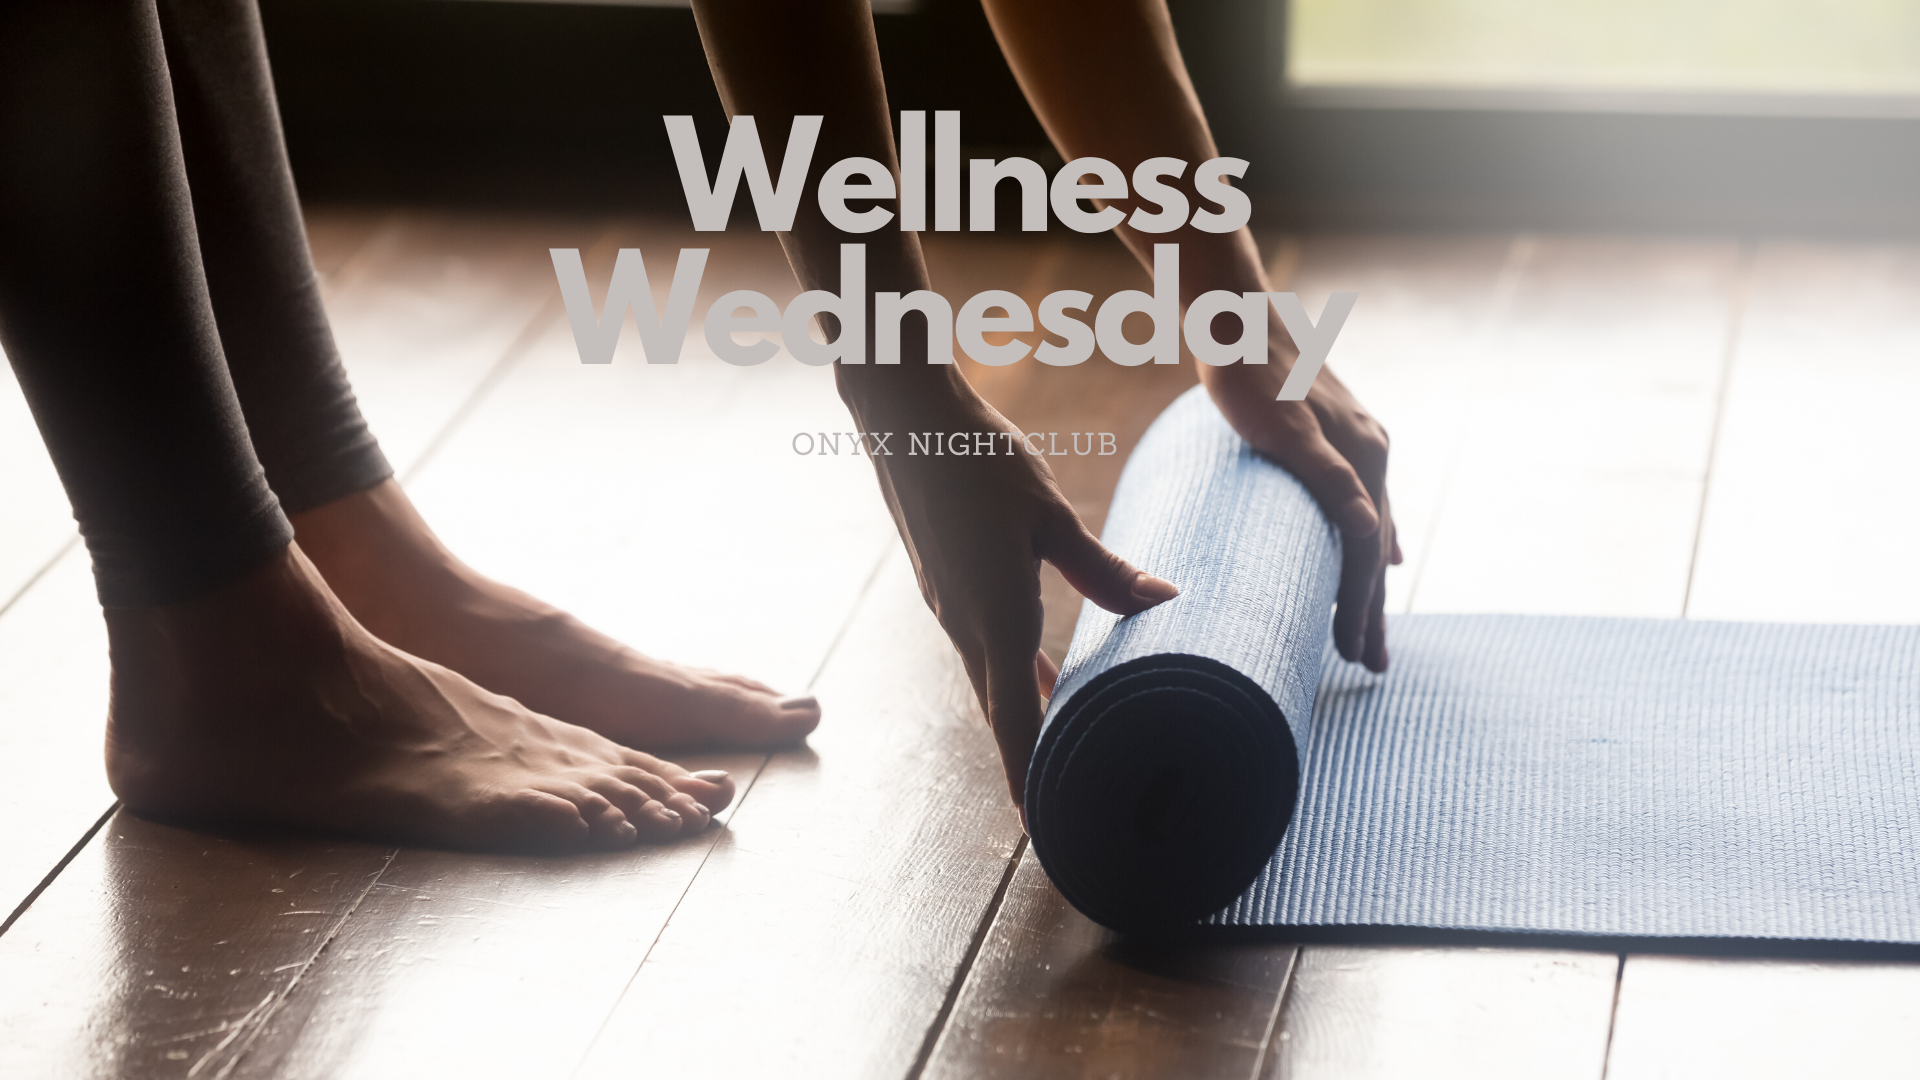 Wellness Wednesday Wk 3 Edition